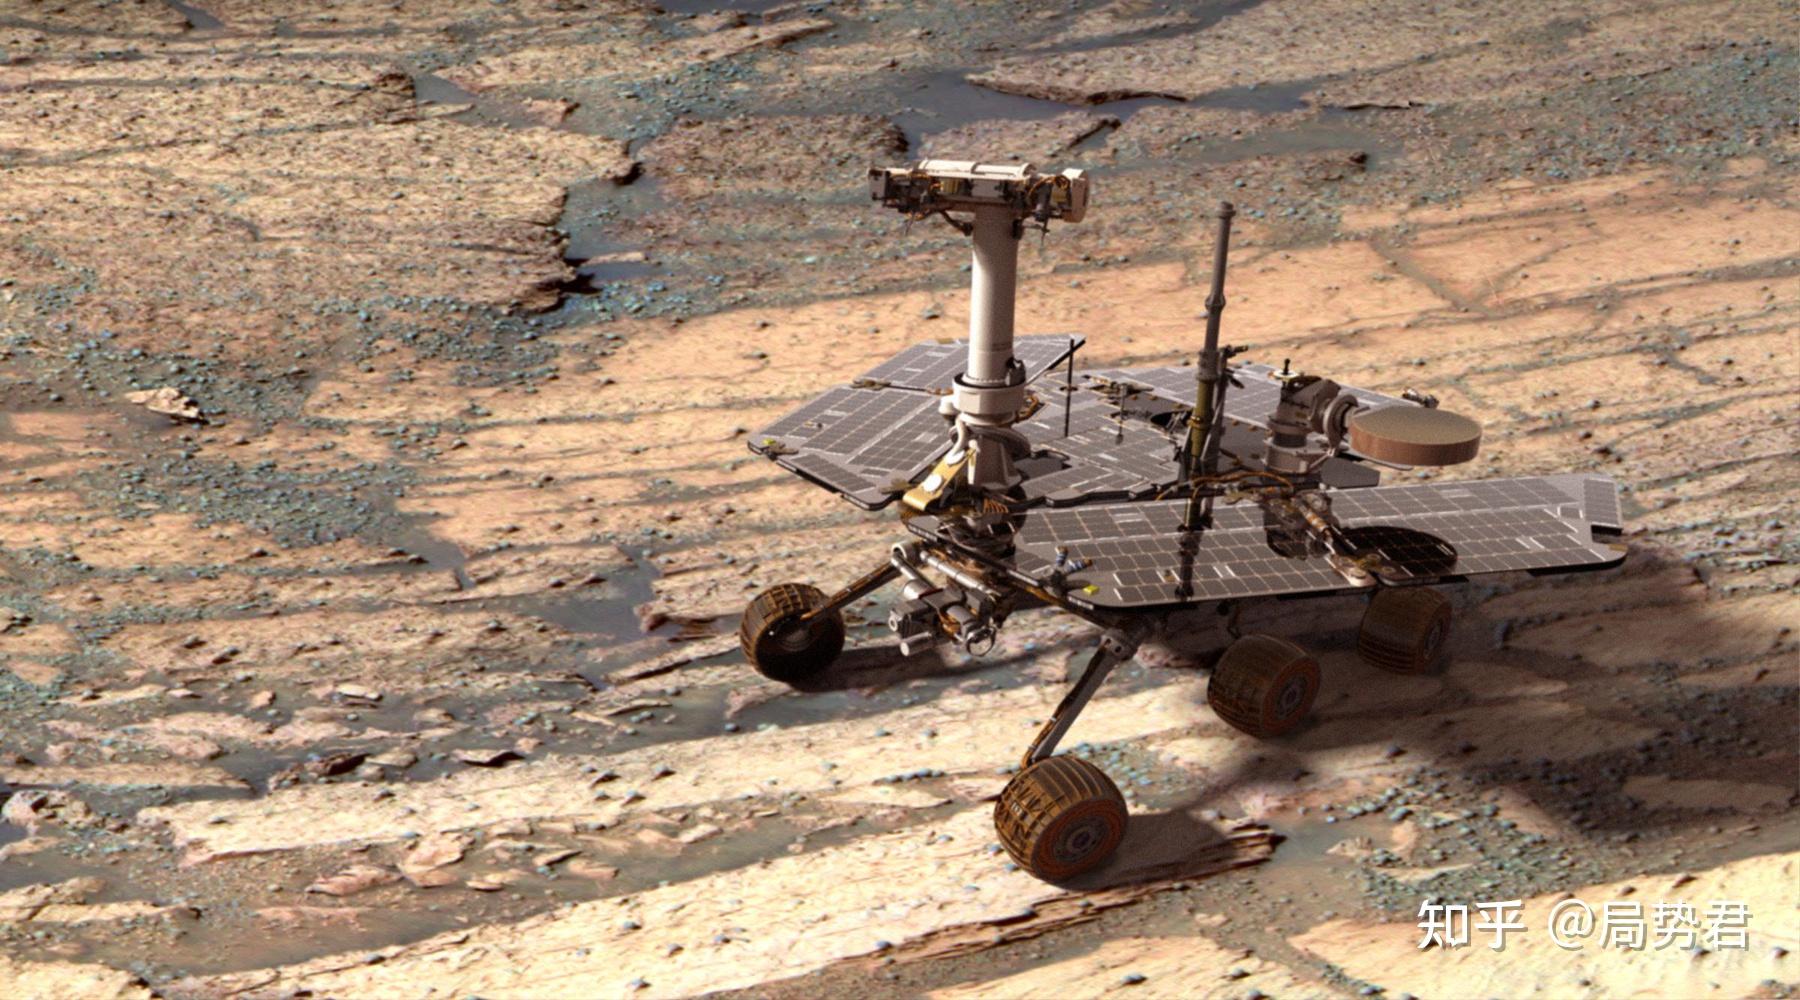 迄今为止,造访过火星的8个探测器全是美国制造